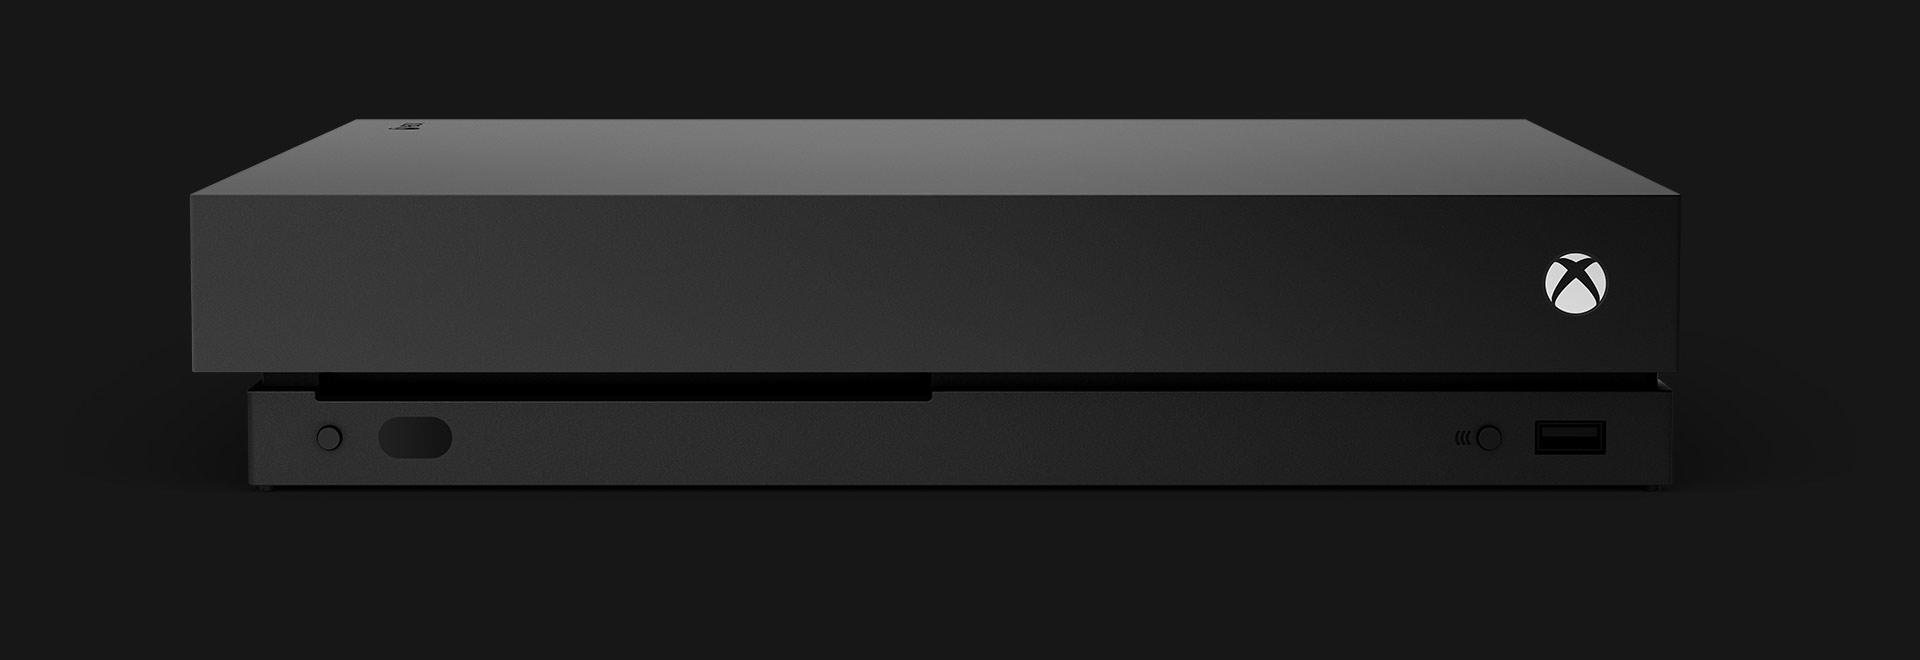 A visão frontal de um console Xbox One X.